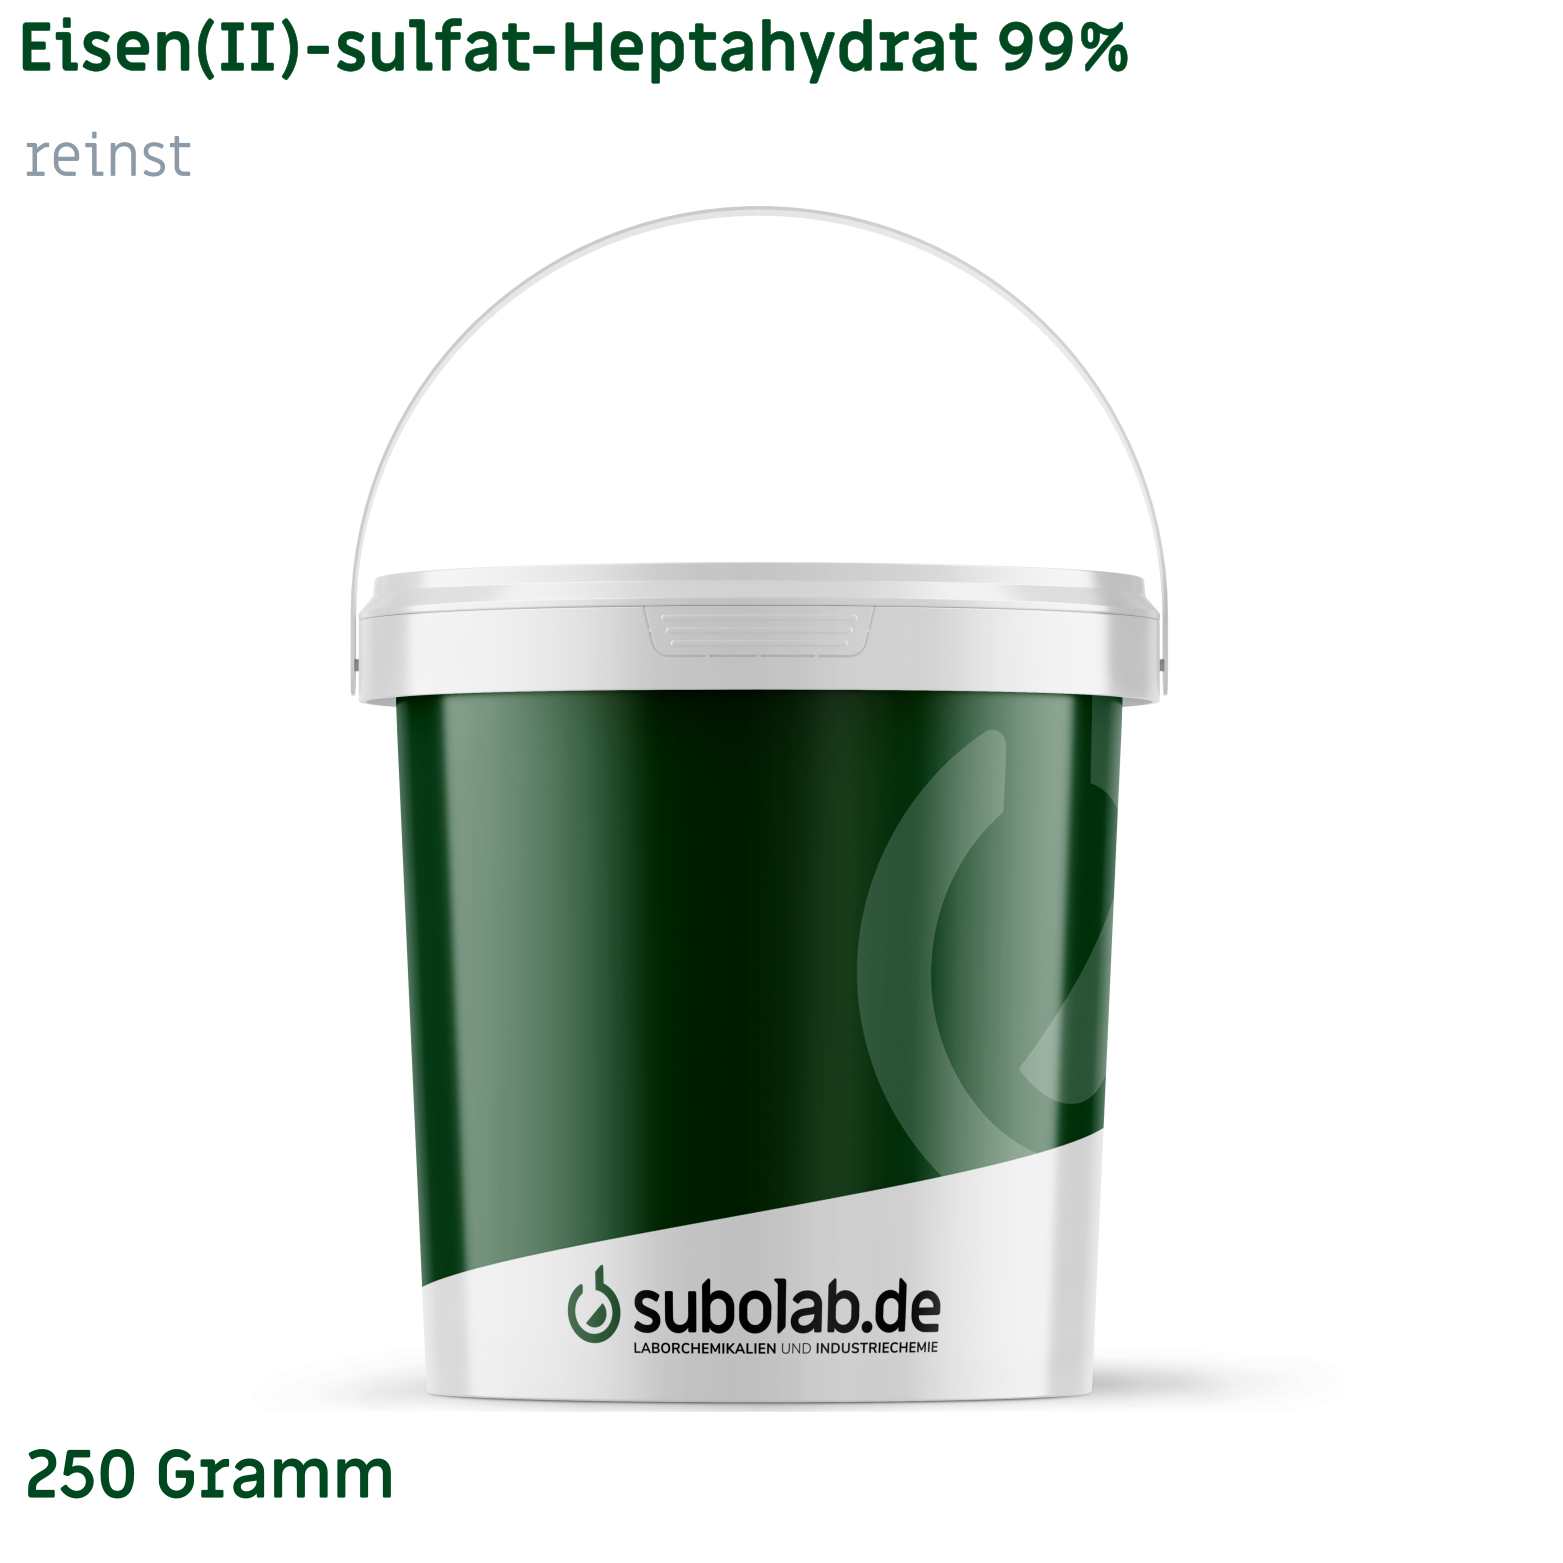 Bild von Eisen(II)-sulfat - Heptahydrat 99% reinst (250 Gramm)